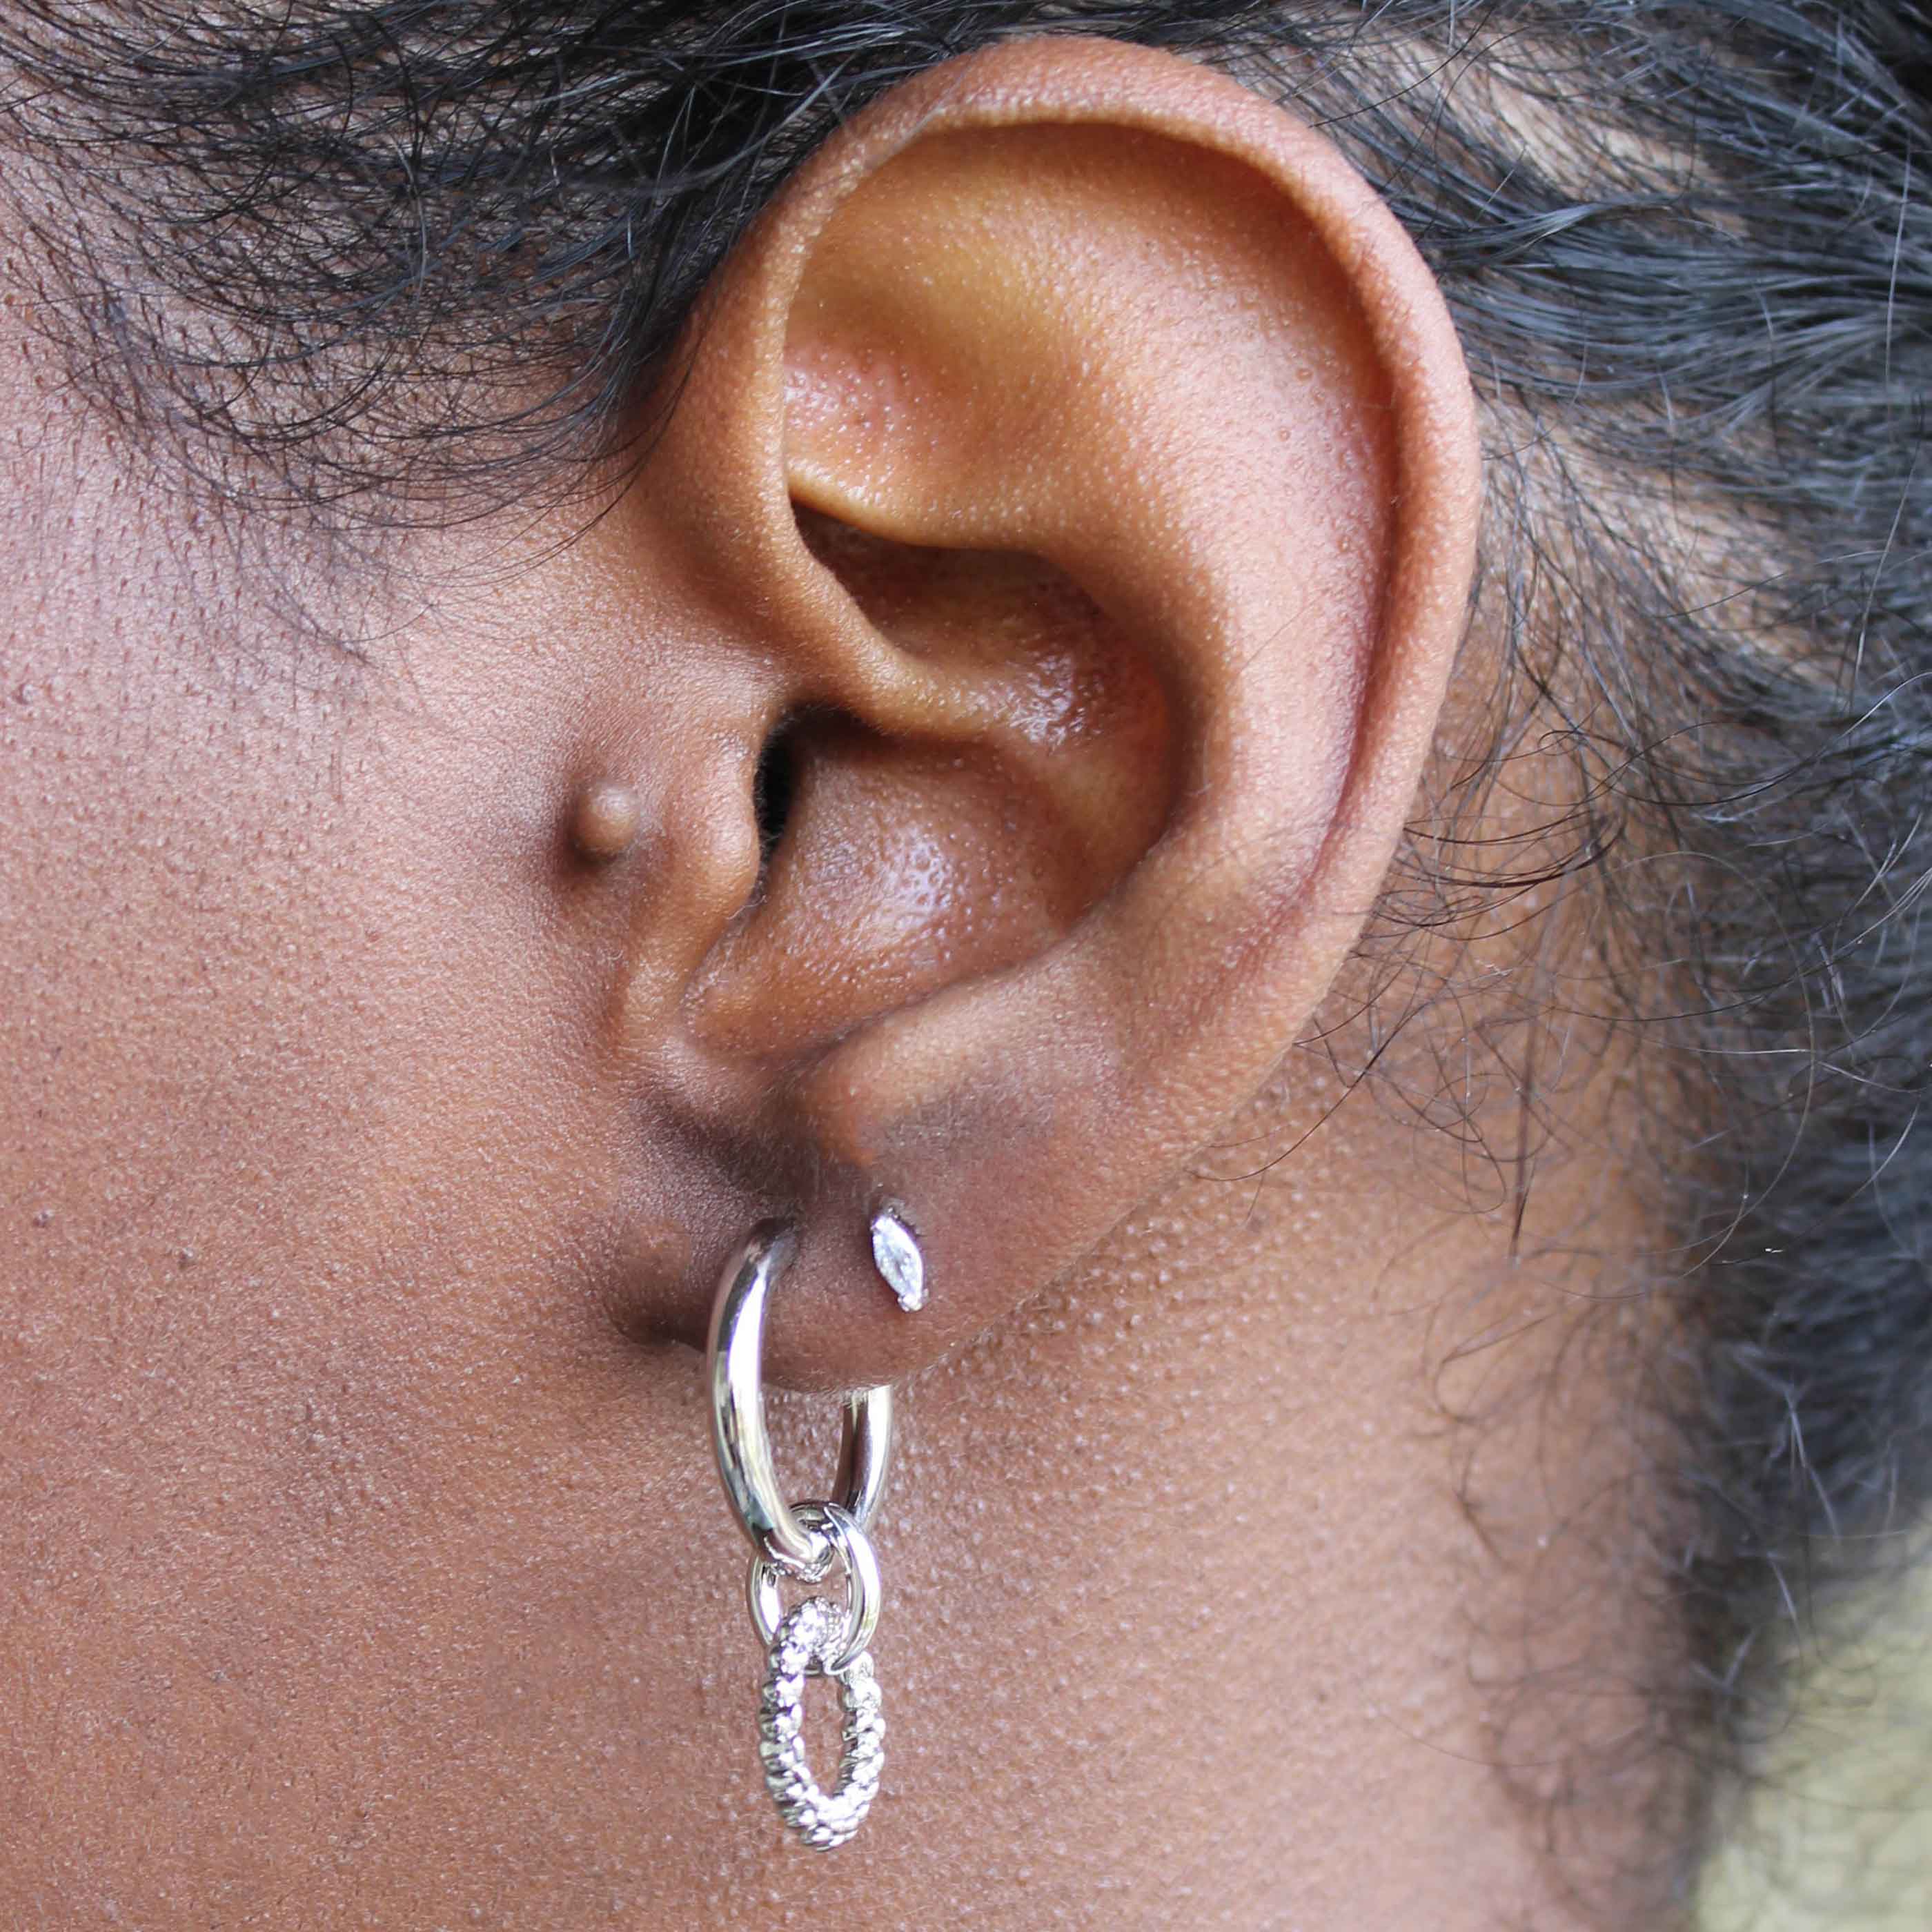 Navette Stud Earrings in Silver worn in second lobe piercing